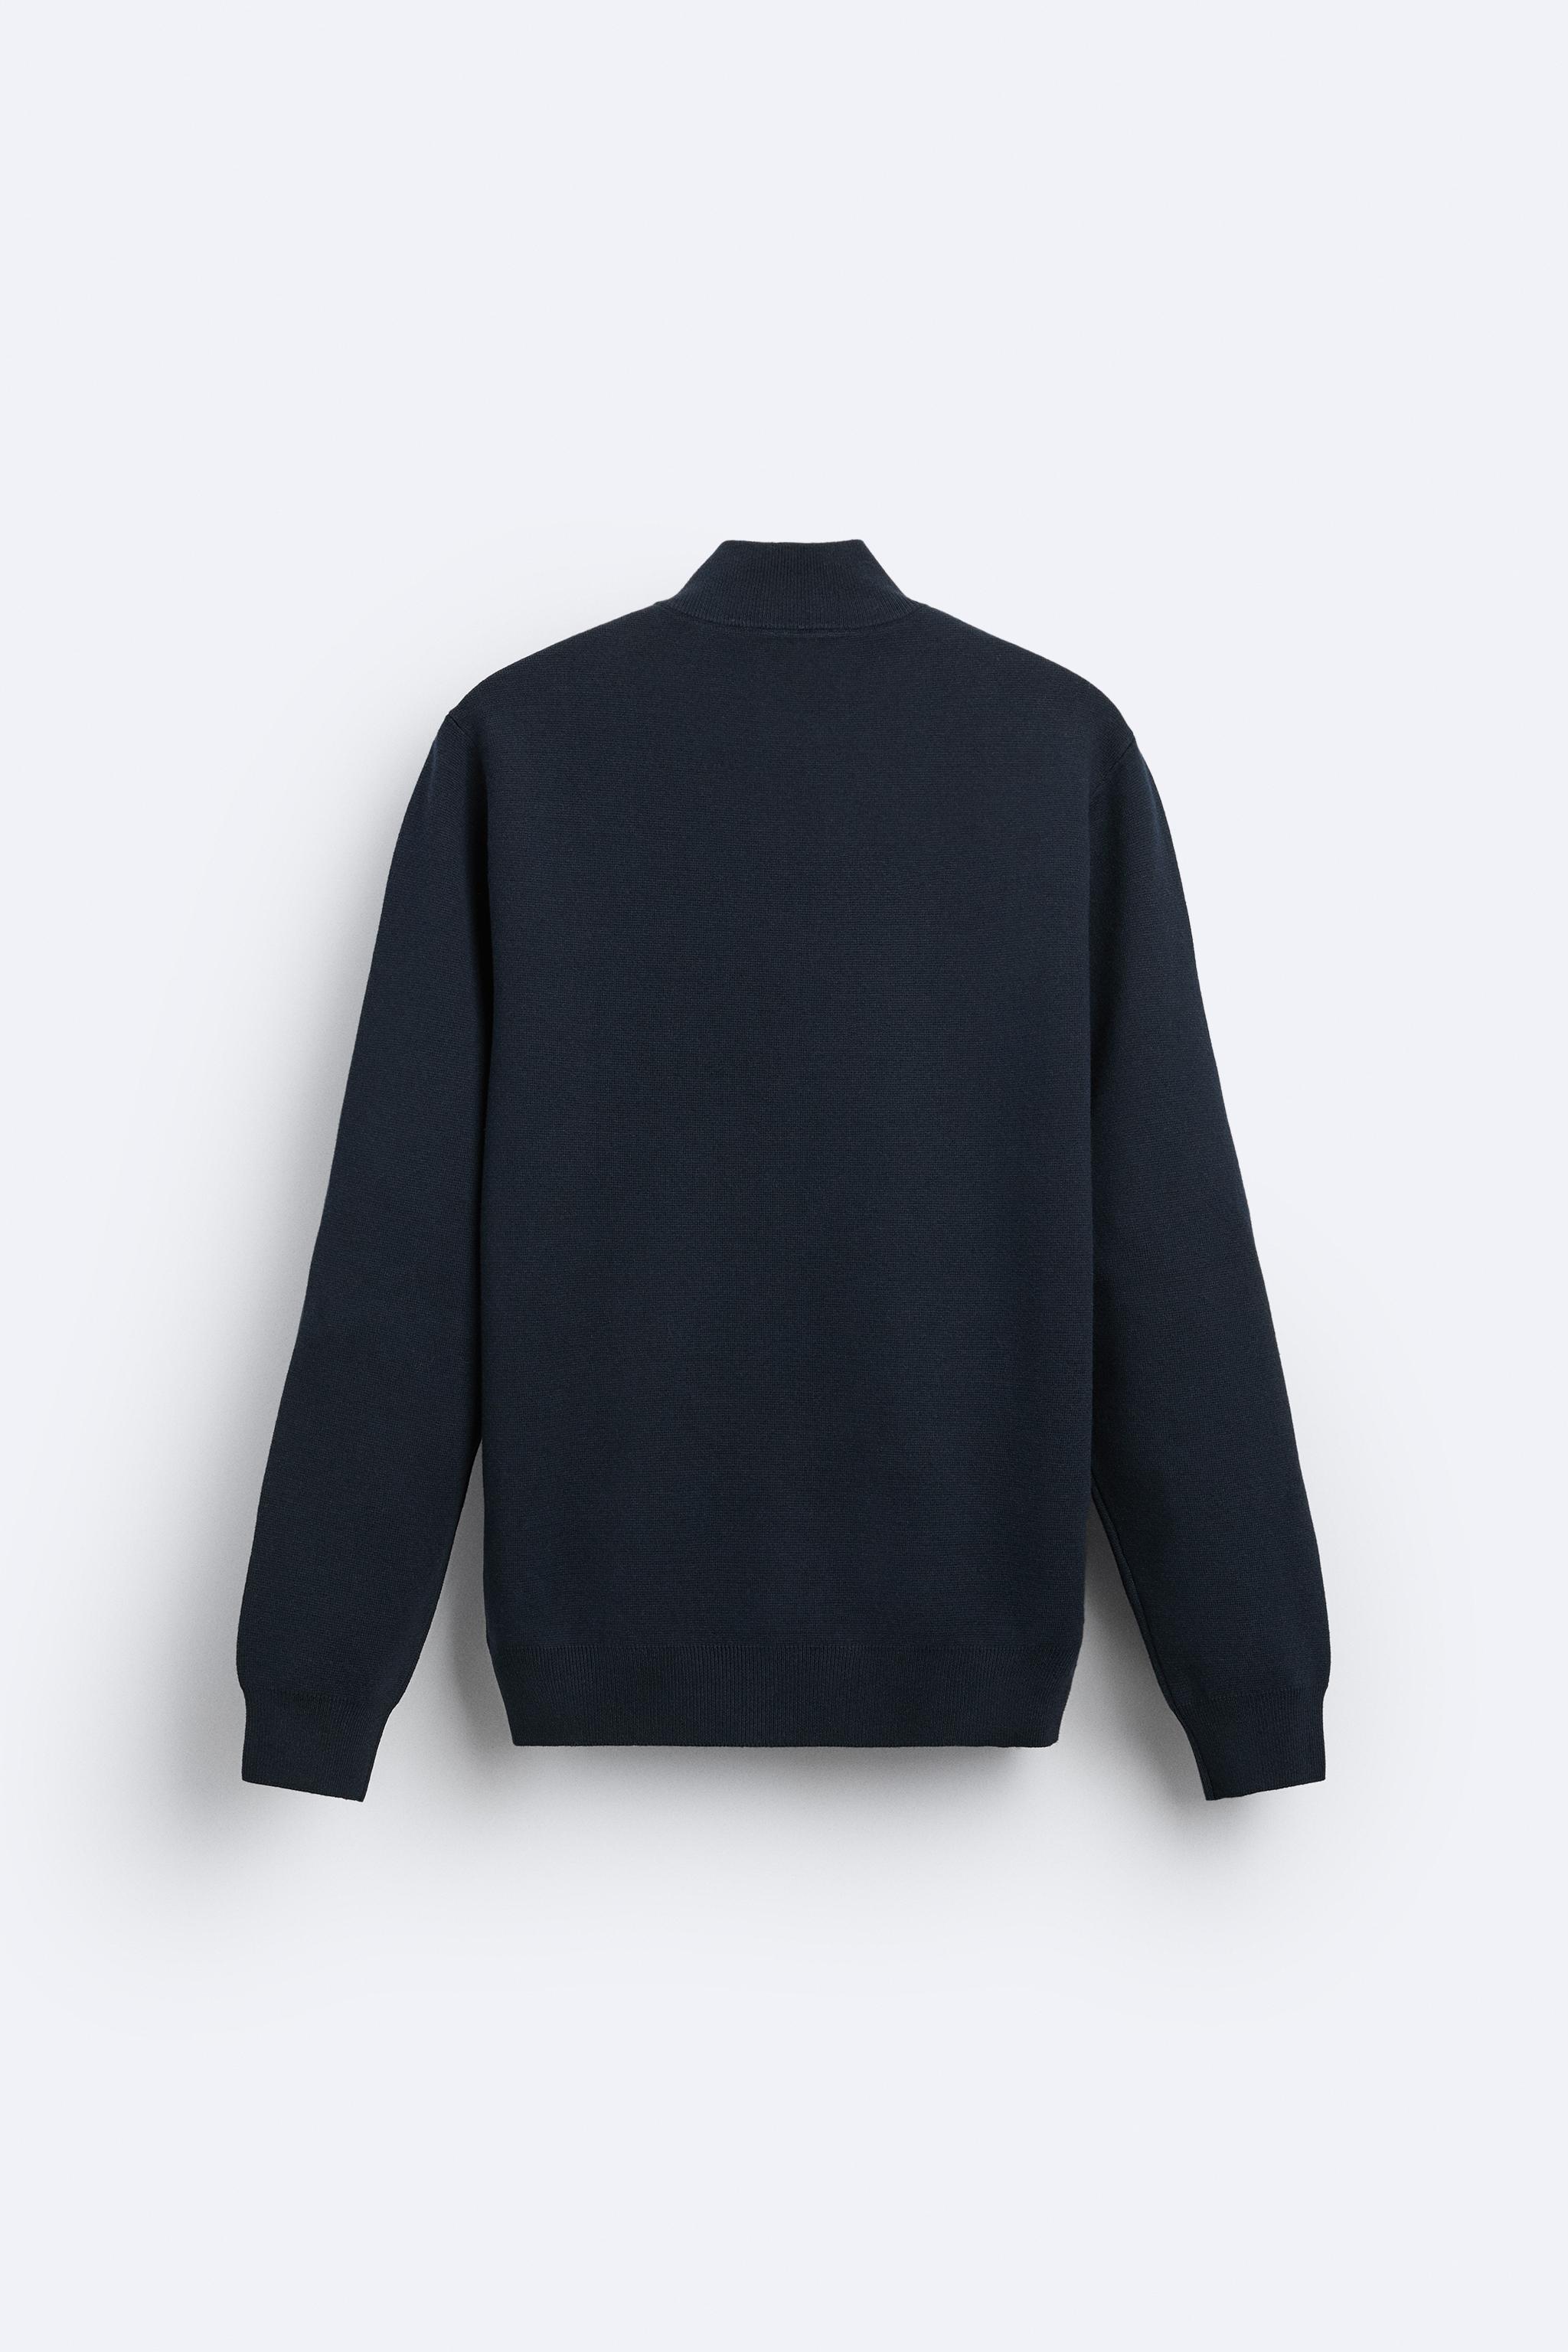 Zara Knit Navy Blue Ribbed Sweater Mock Neck M - Gem